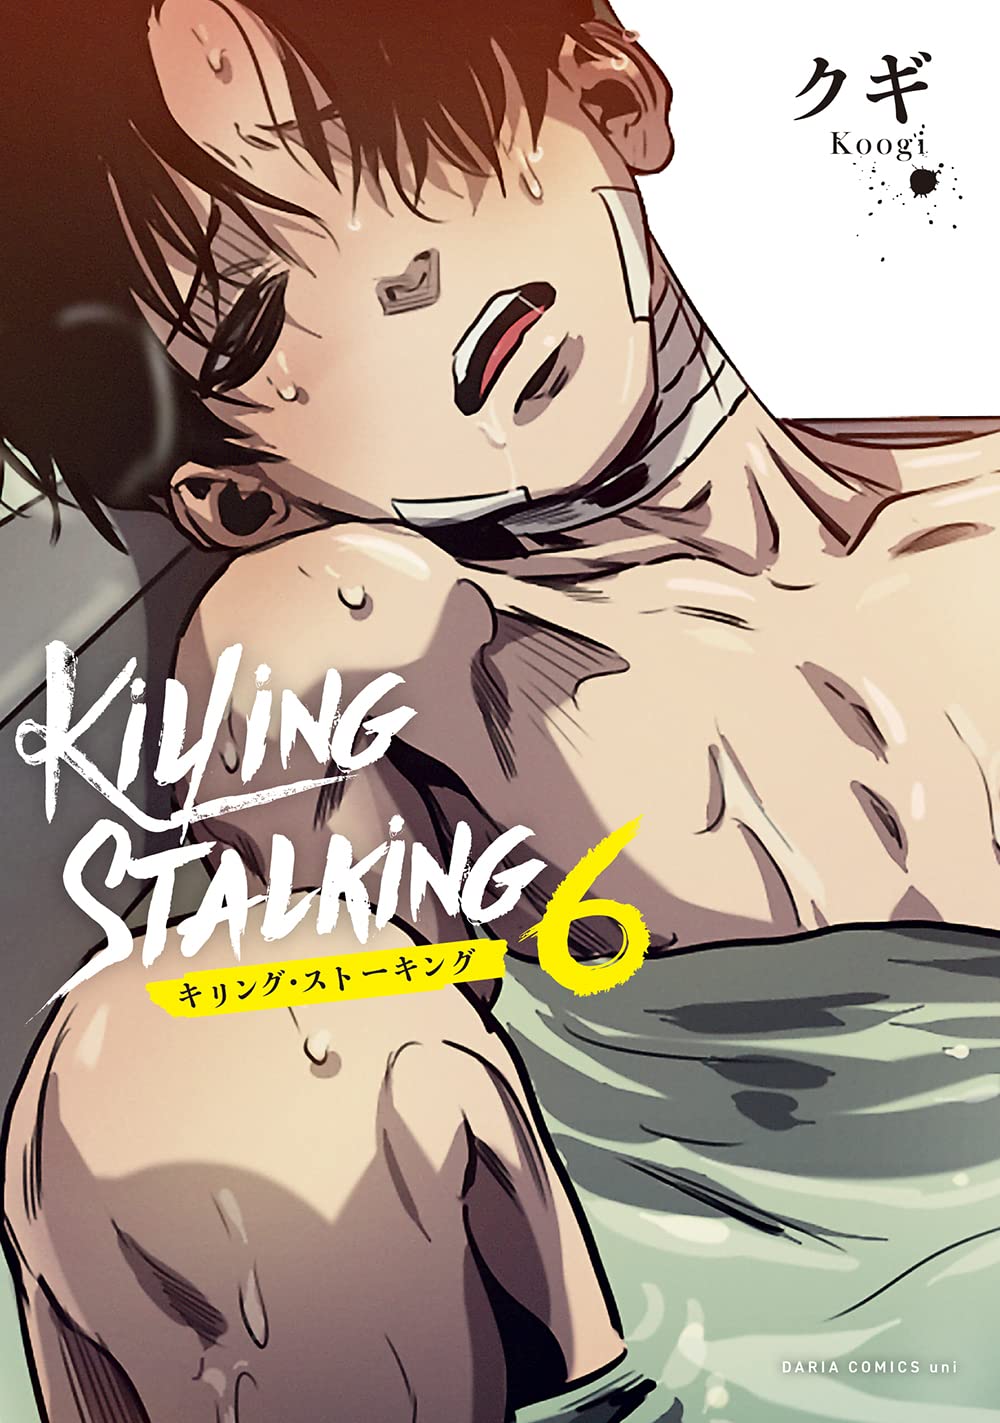 Killing Stalking 1 por Koogi em segunda mão durante 7 EUR em